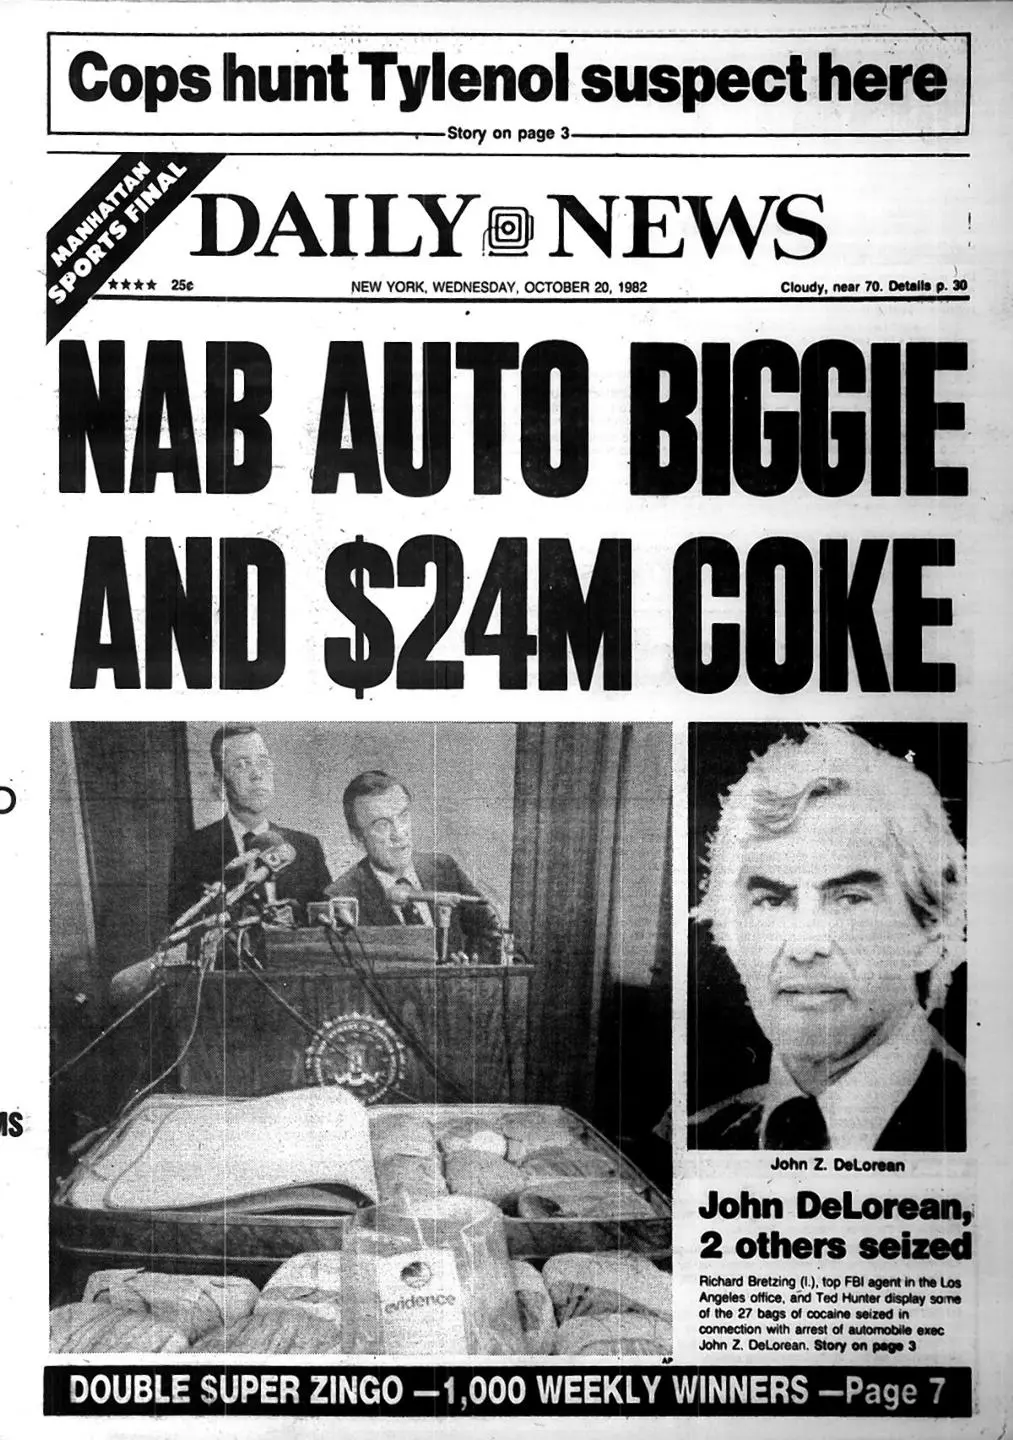 Portada de periódico con el titular “Detienen a Magnate Automotriz y Confiscan 24 Millones de Dólares en Cocaína”, reflejando el impacto del arresto de John DeLorean en la historia de la industria automotriz.